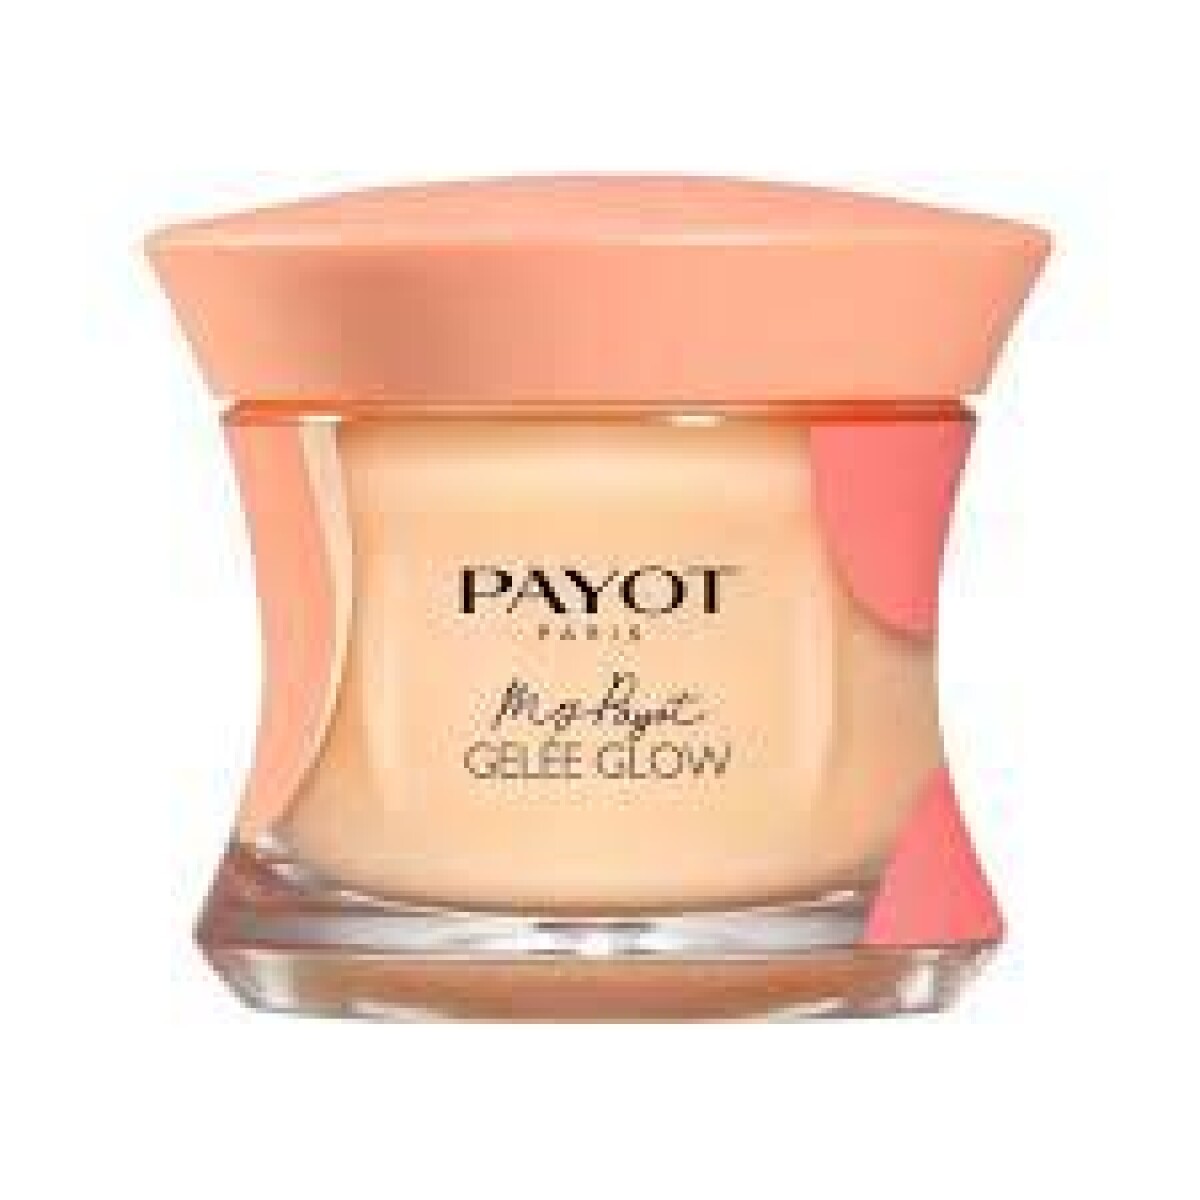 My Payot - GelÈe Glow 